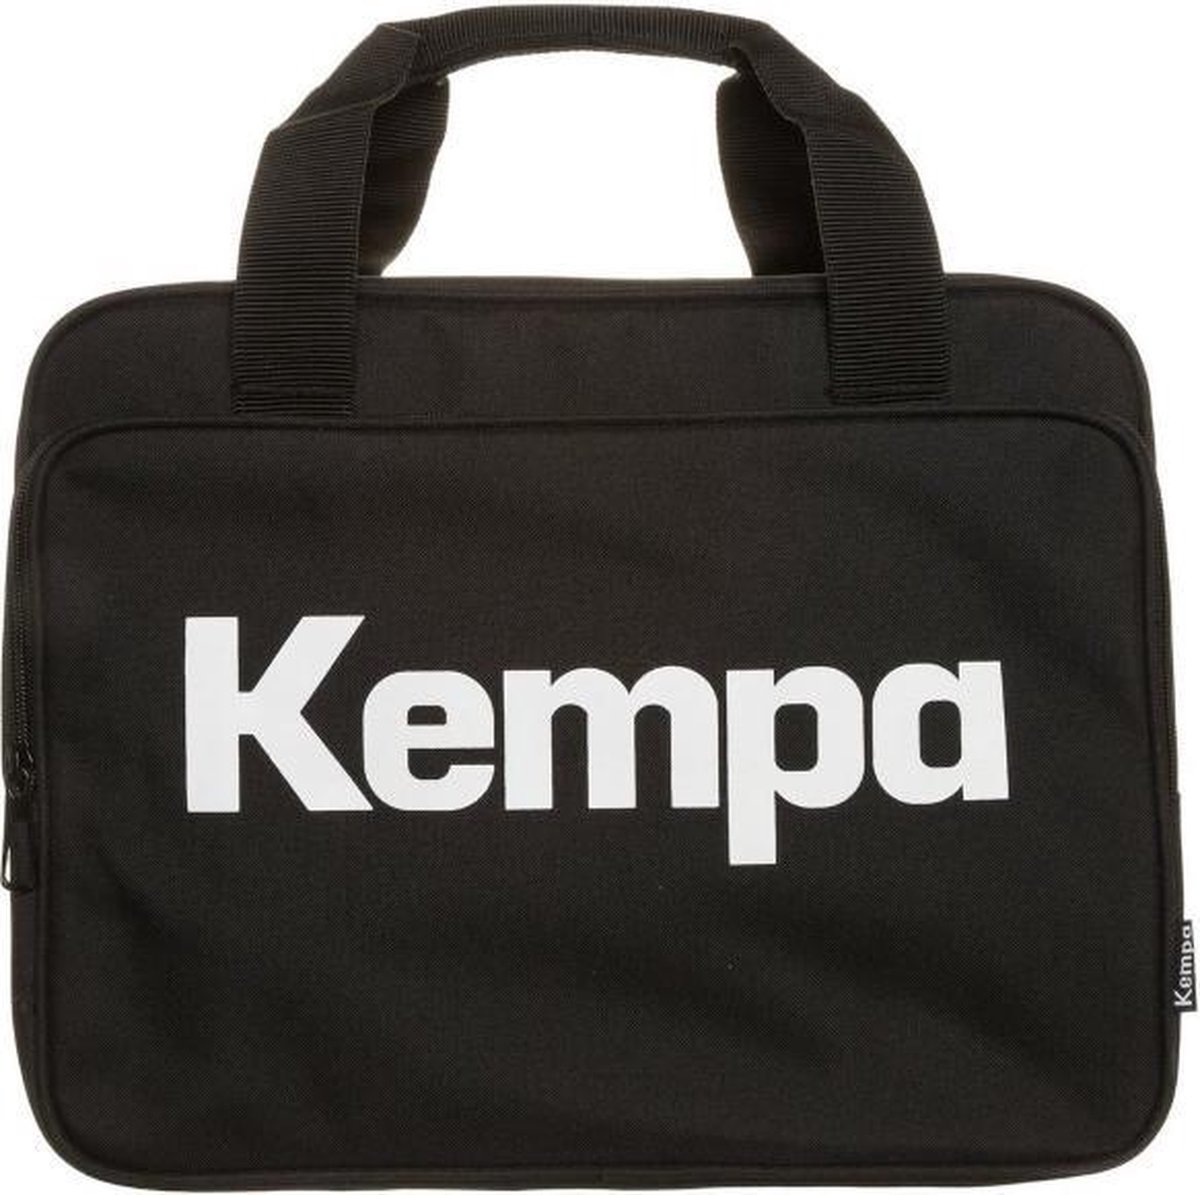 Kempa Medical Bag